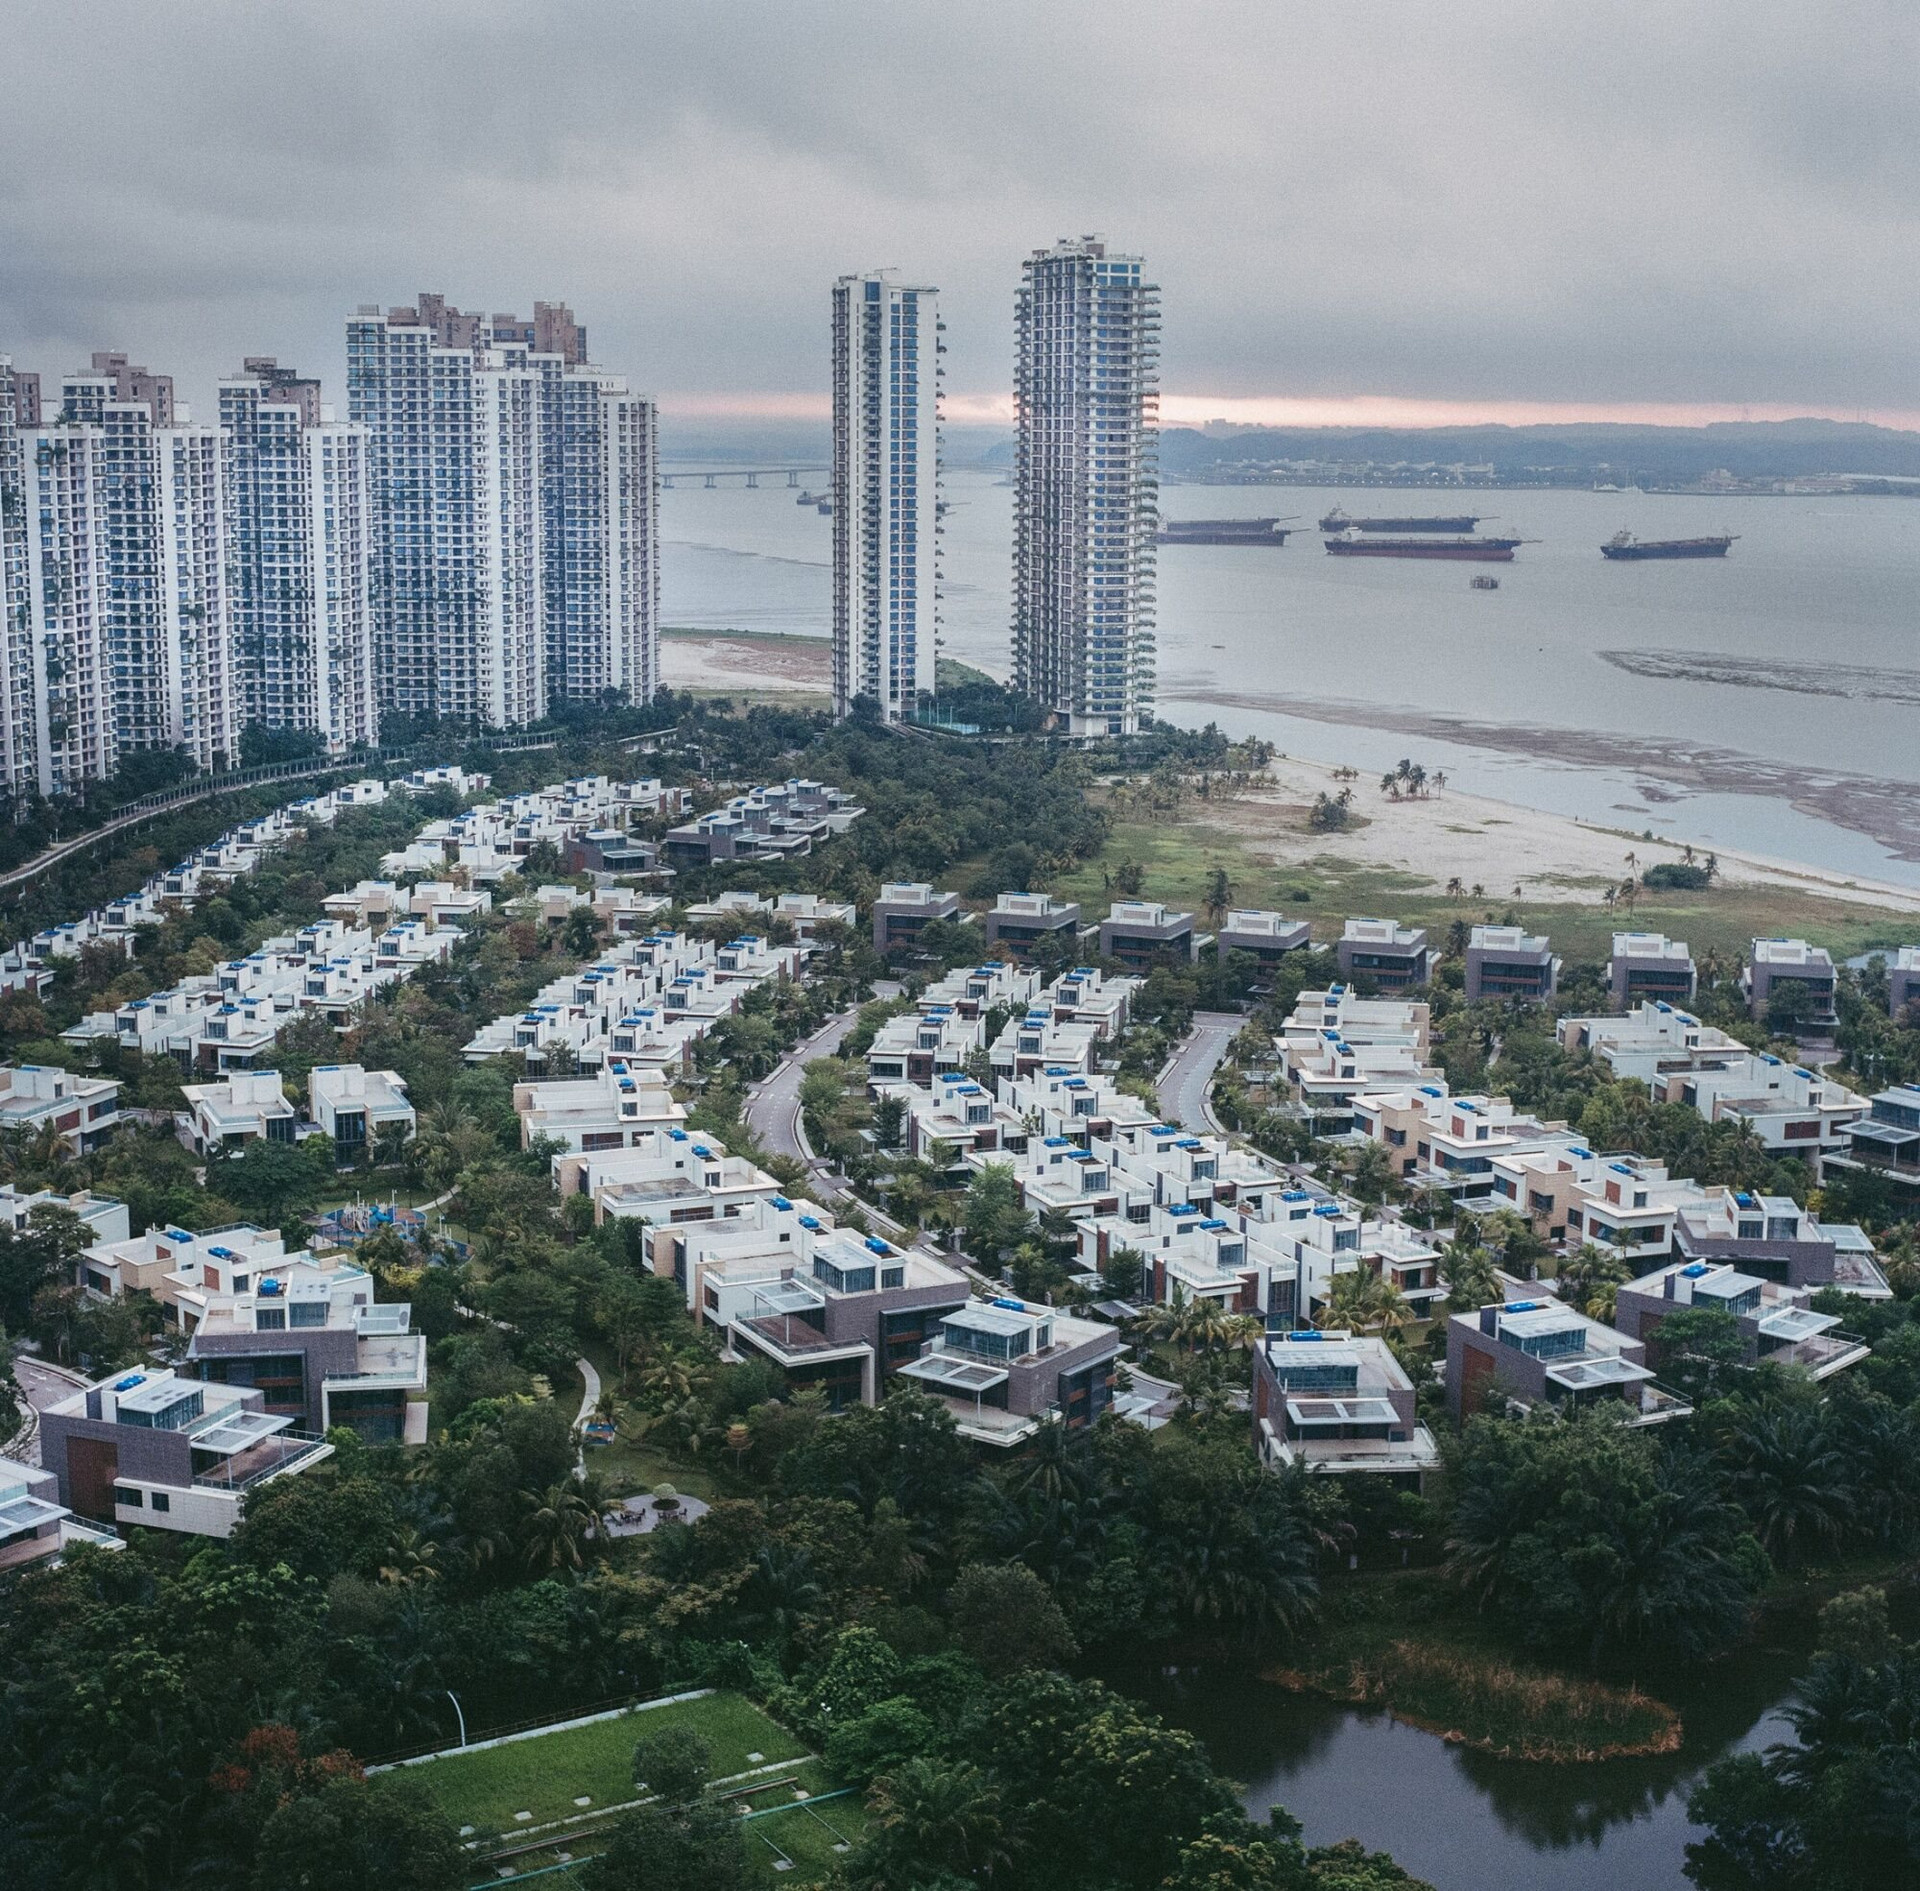 'Nỗi buồn' của thành phố 'mọc' trên mặt nước ở 1 quốc gia Đông Nam Á: Dự án 100 tỷ đô thể hiện tham vọng của nhà phát triển BĐS lớn nhất Trung Quốc nhưng gần như trống không - Ảnh 1.